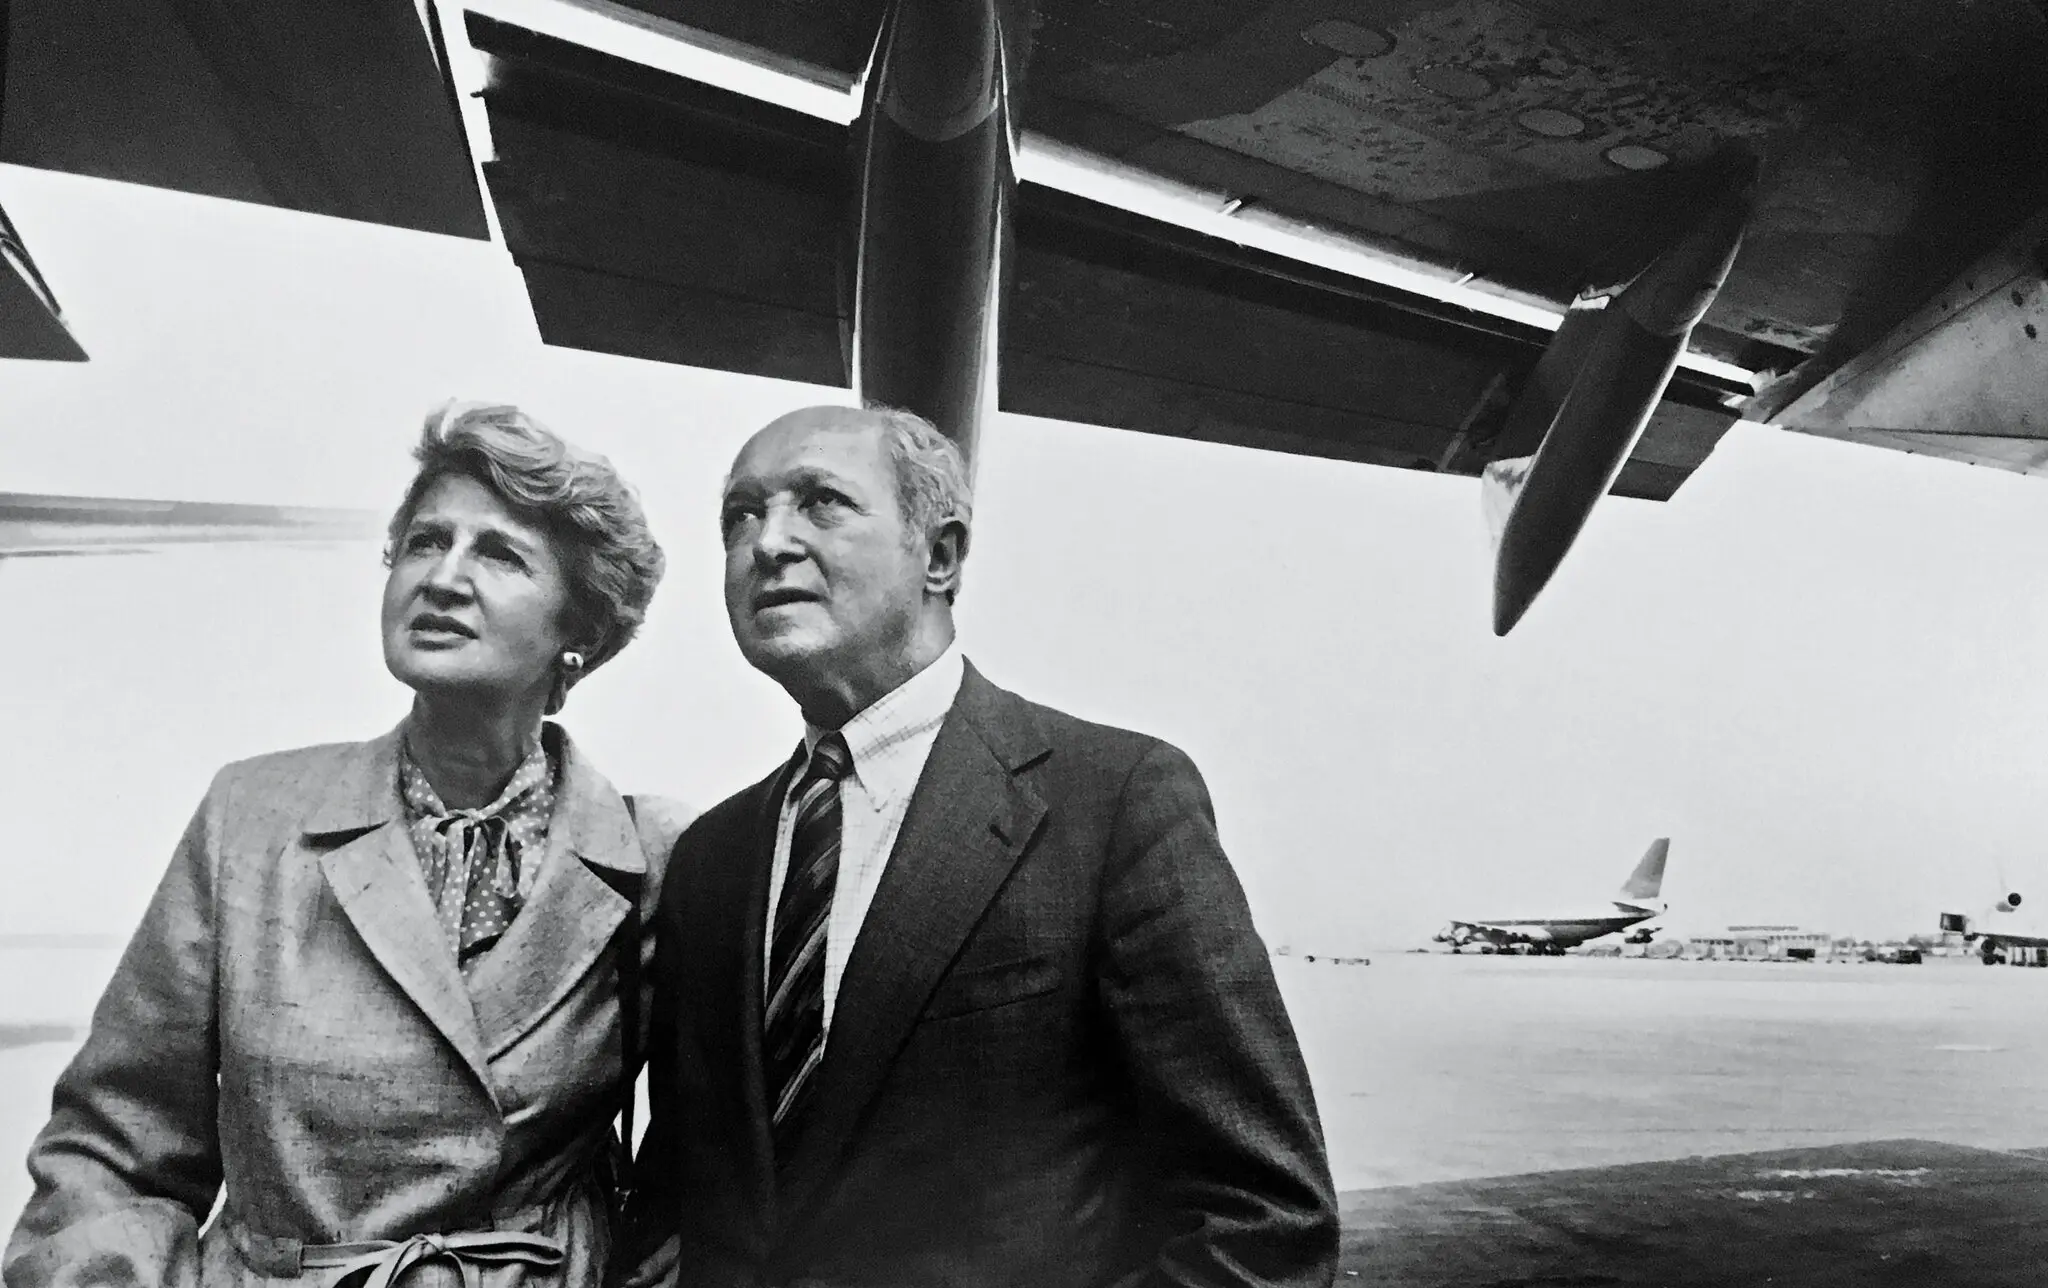 Marylin Bender em 1982 com seu marido, Selig Altschul. Os dois foram coautores de “The Chosen Instrument”, uma biografia de Juan Trippe, fundador da Pan American World Airways, publicada naquele ano. (Crédito da fotografia: Sigrid Estrada)